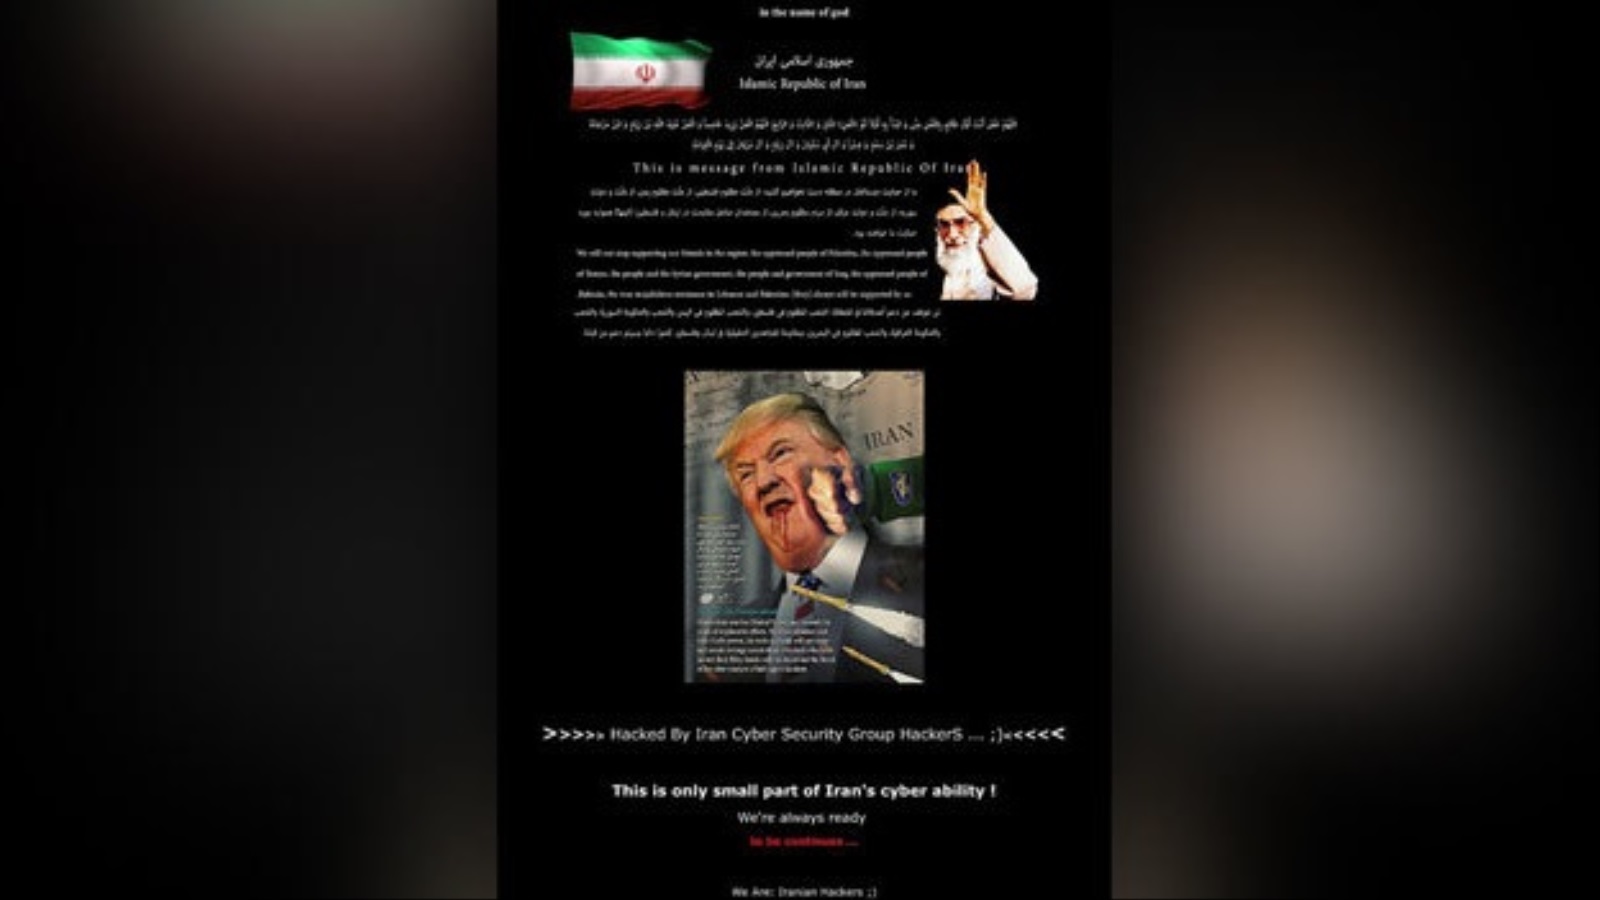 صورة للرئيس الأميركي دونالد ترامب وهو يتلقى لكمات إلى جانب رسائل مؤيدة لإيران تظهر في موقع حكومي أميركي اخترقته مجموعة إيرانية (مواقع التواصل)